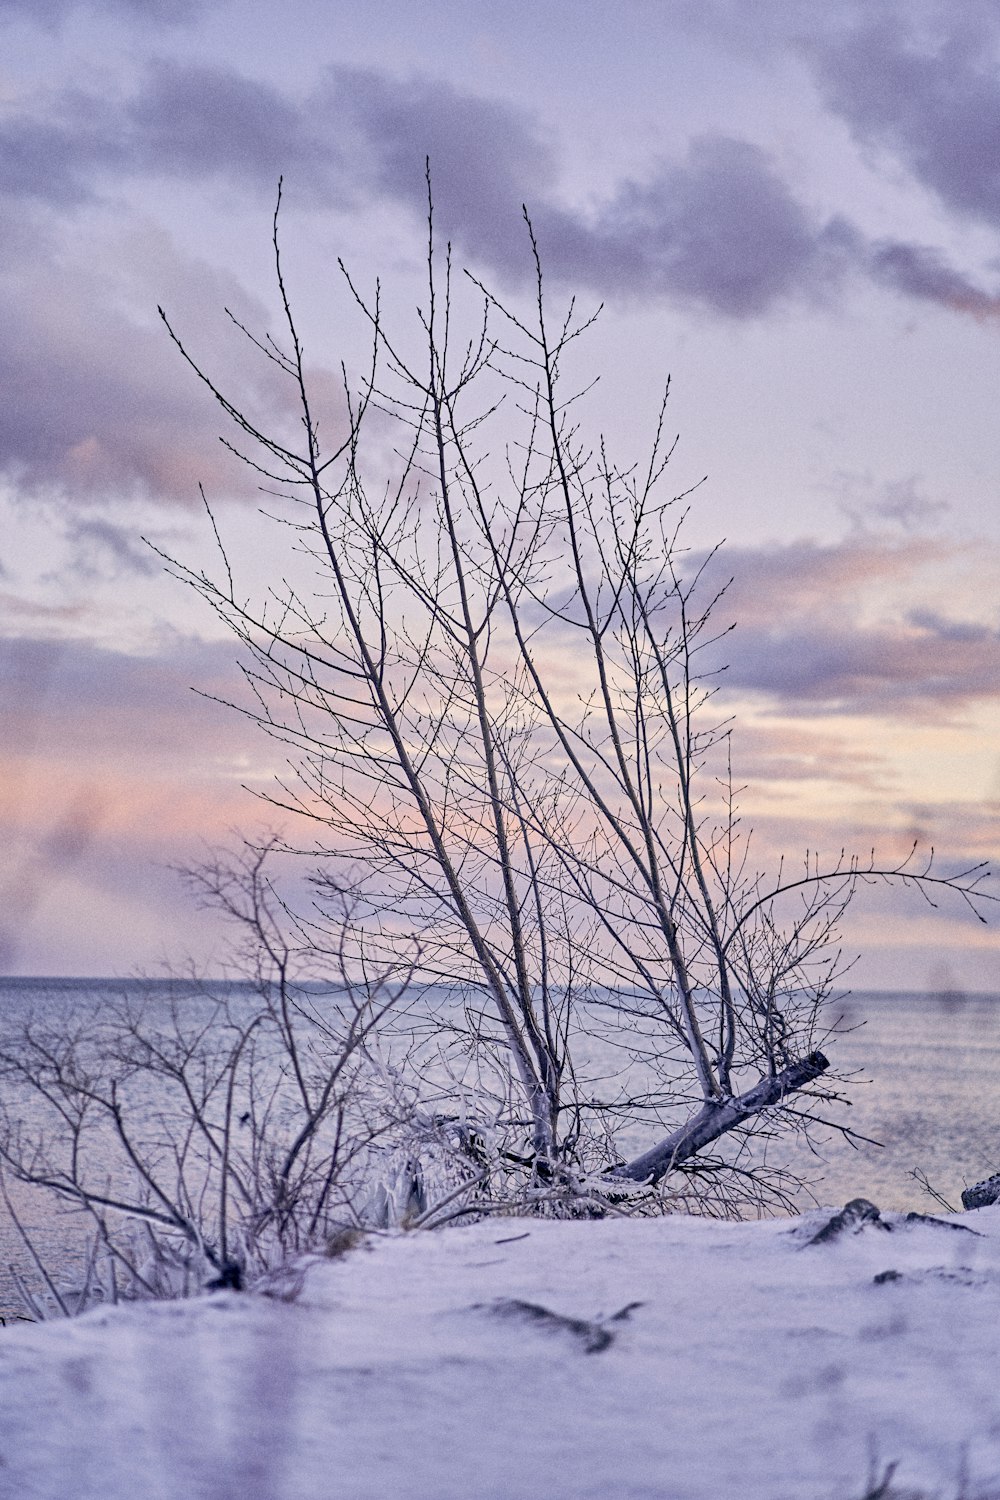 Un arbre solitaire se tient dans la neige au bord de l’eau